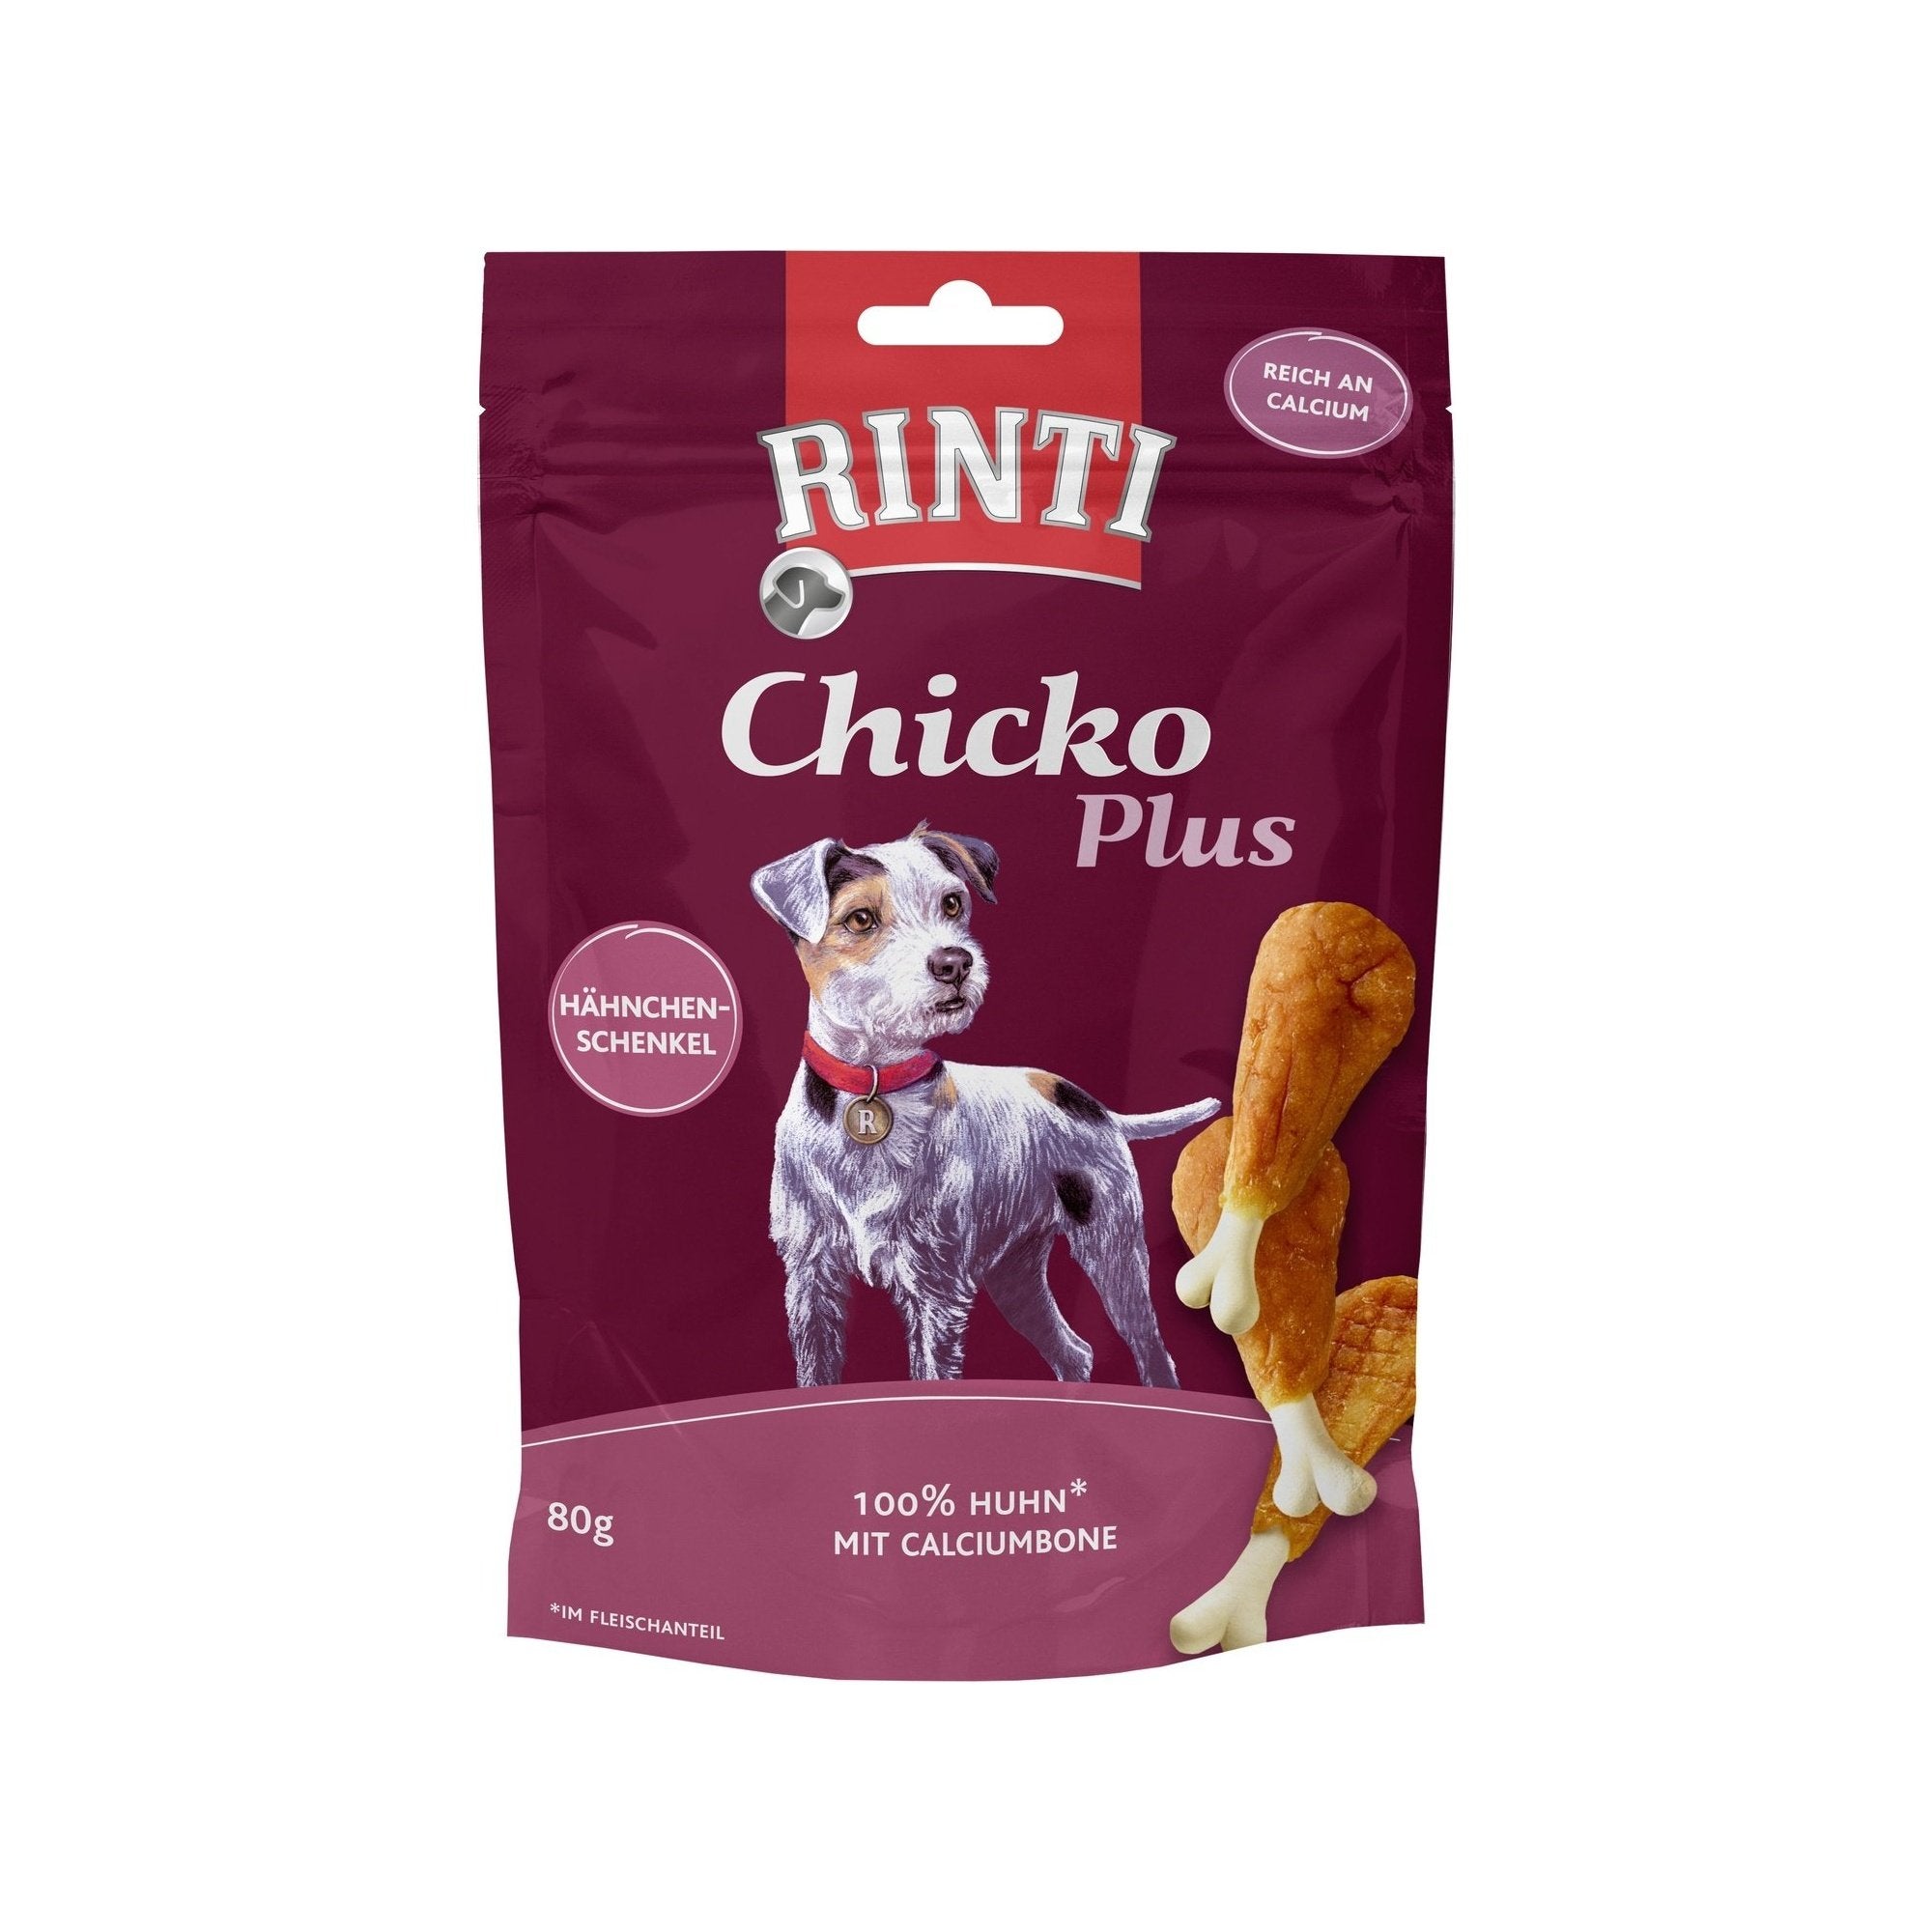 Rinti Chicko Plus Hähnchenschenkel mit Calciumbone - zoo.de